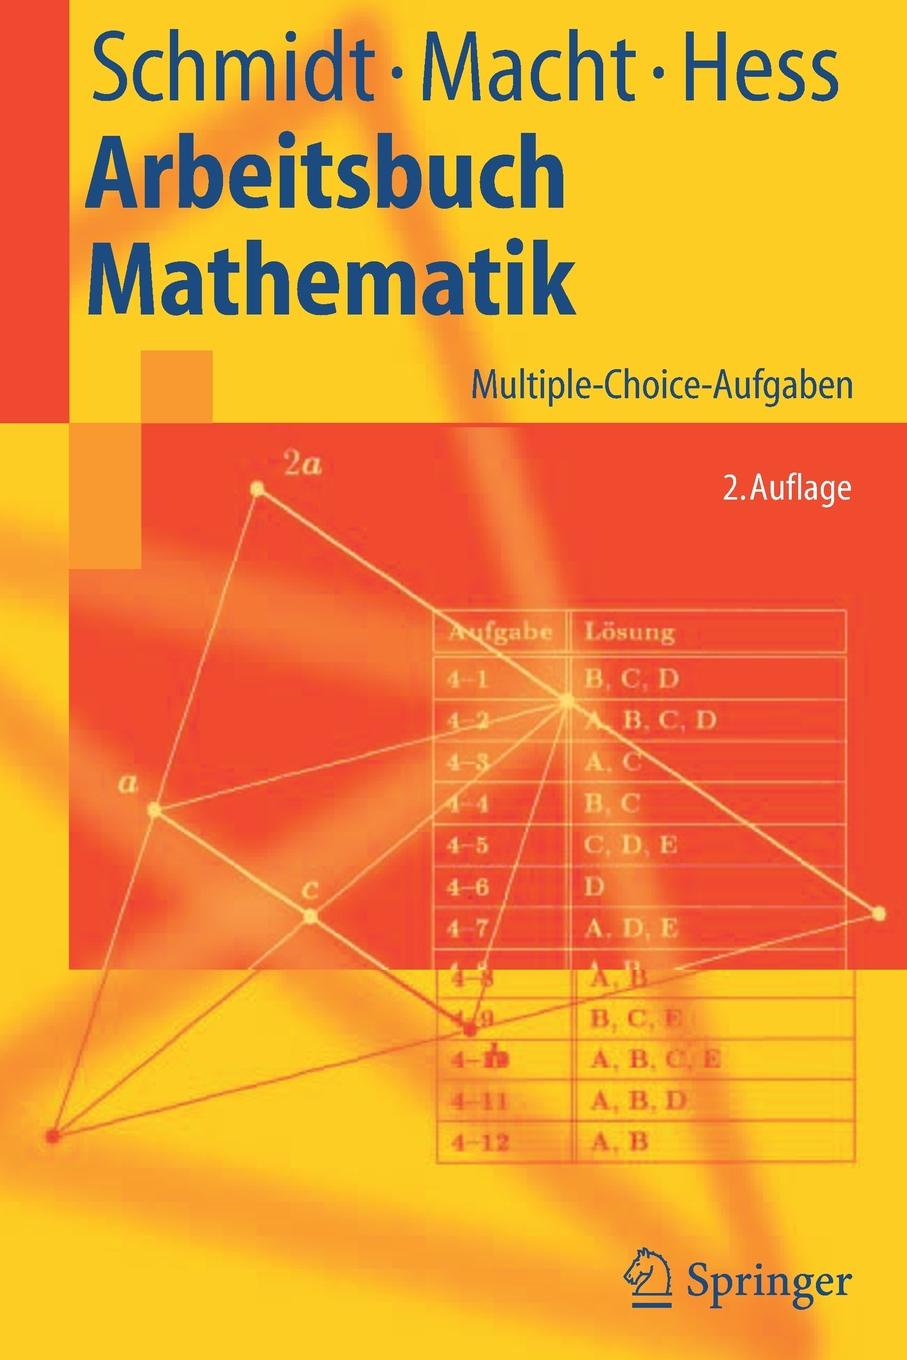 Arbeitsbuch Mathematik. Multiple-Choice-Aufgaben